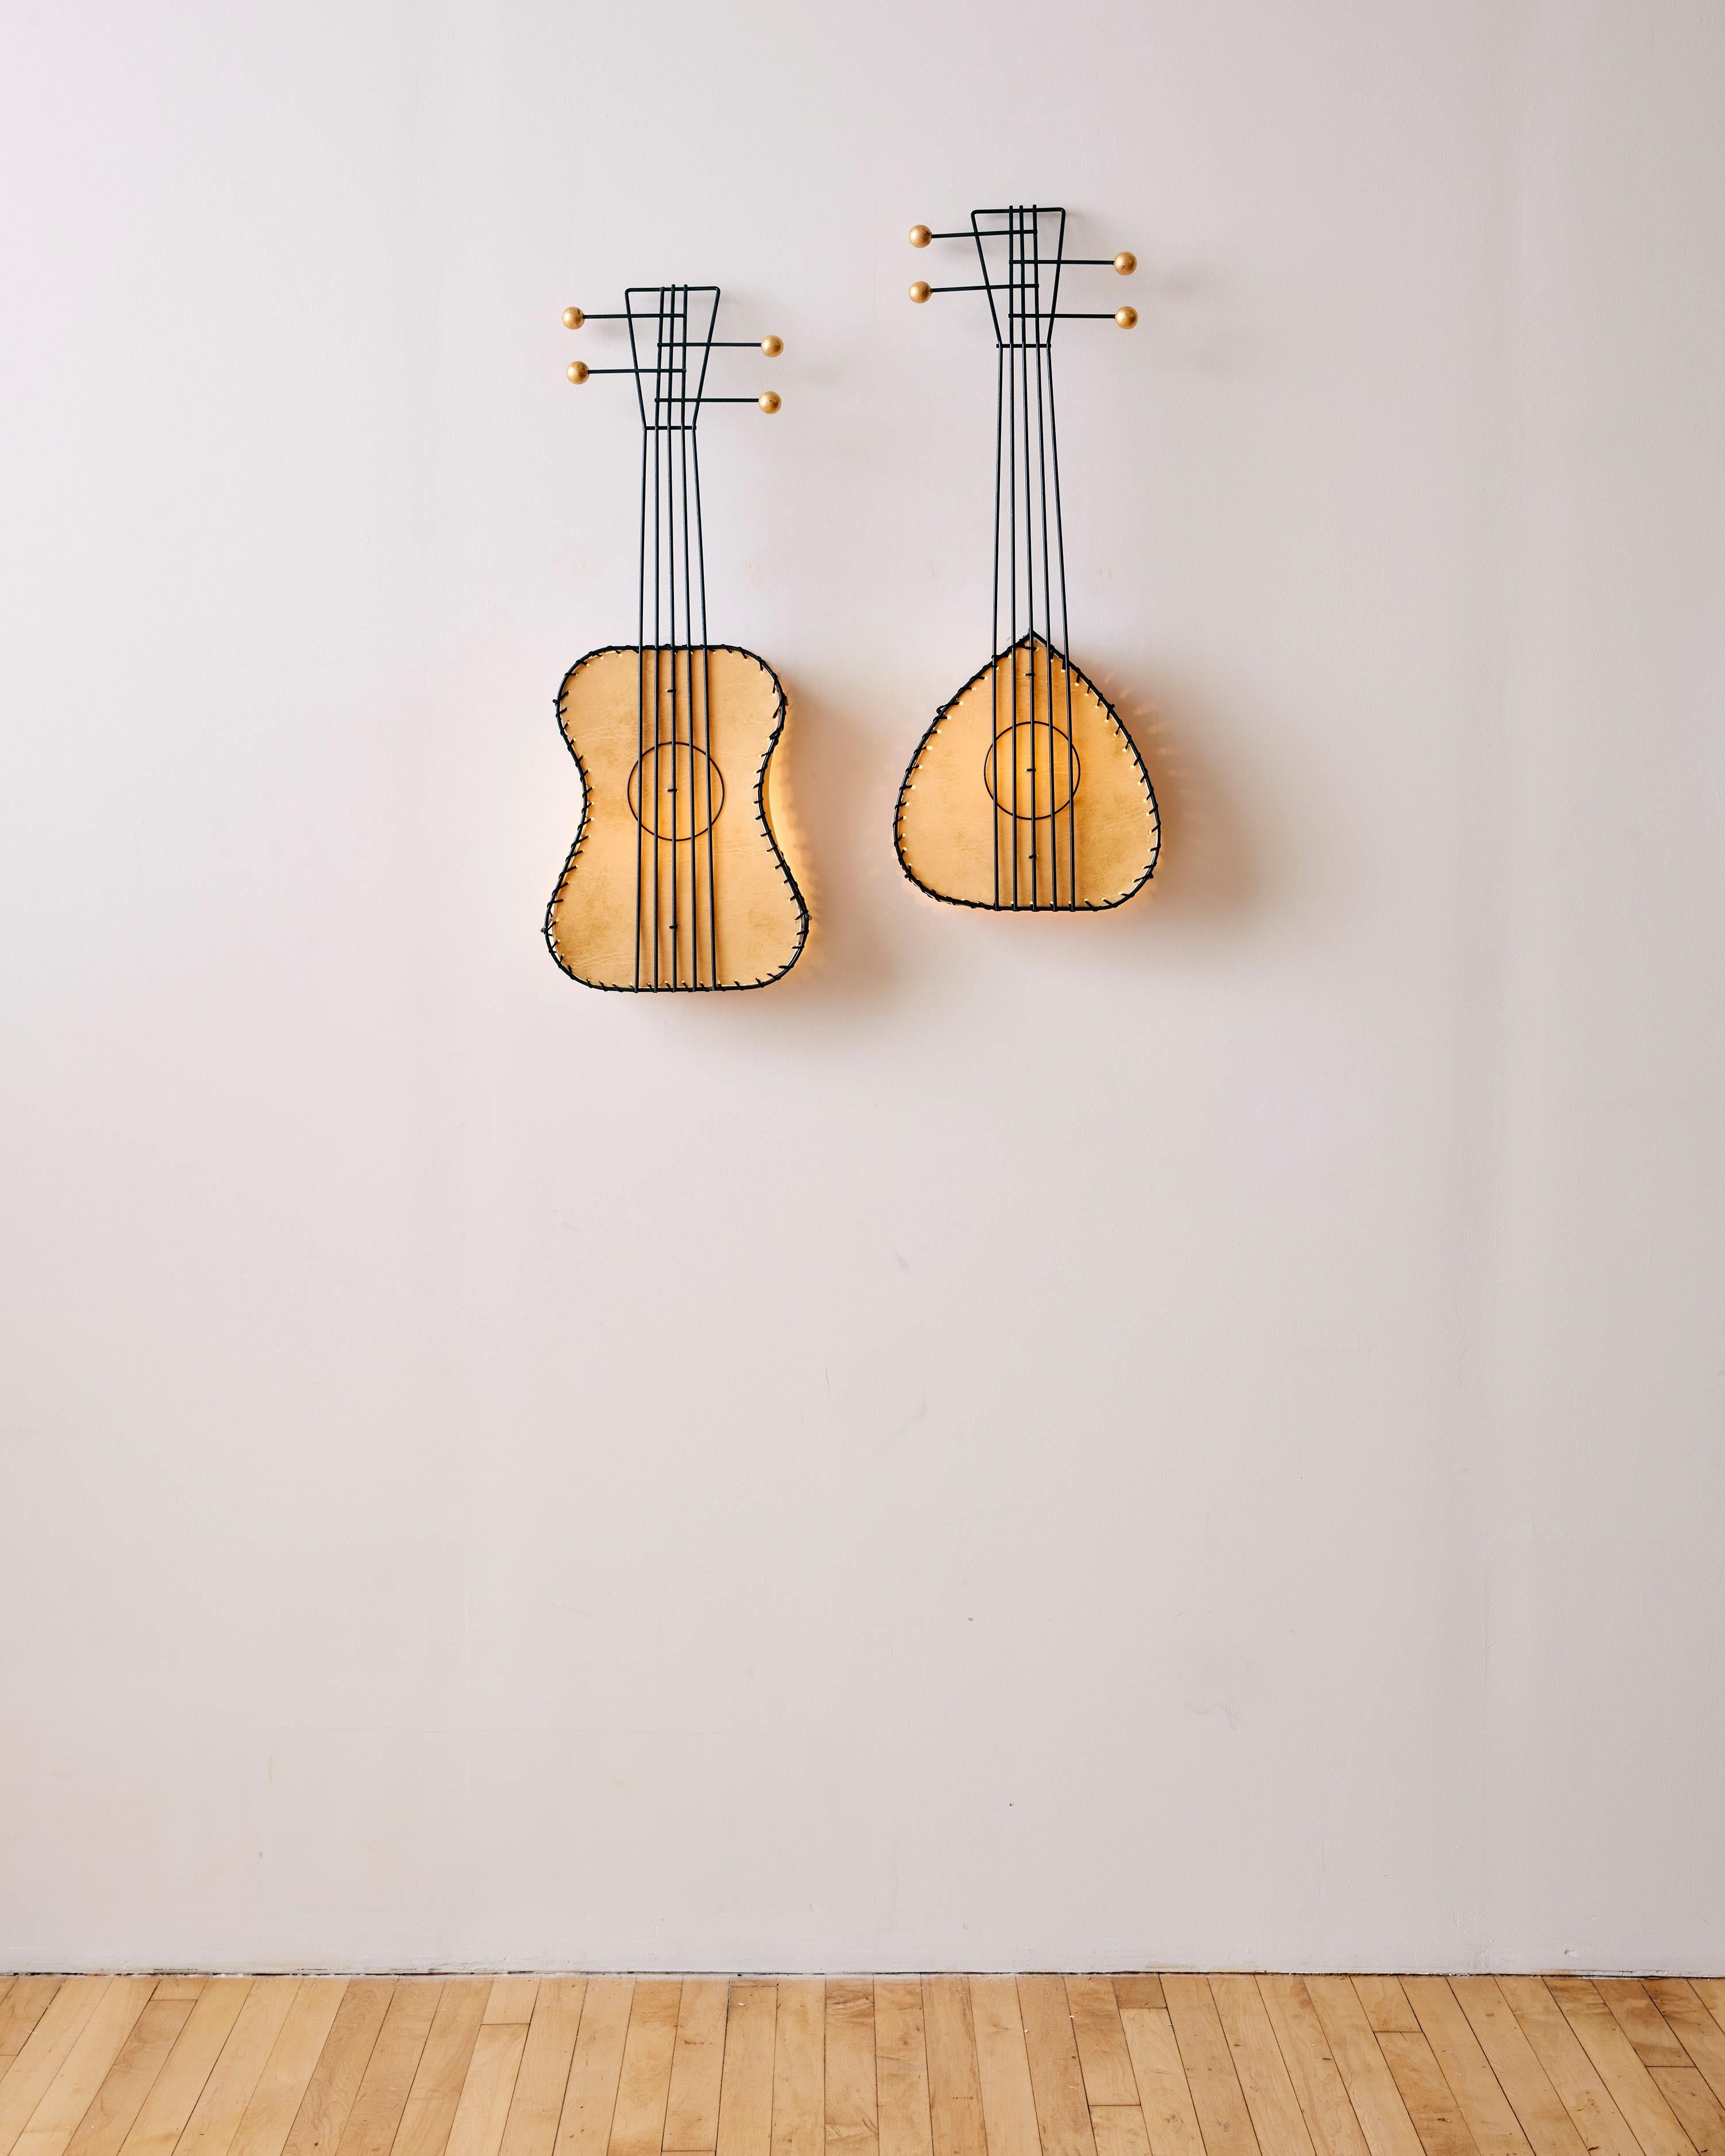 Paire de lampes murales pour instruments de musique de Frederic Weinberg, en forme de guitare et de luth, avec parchemin doublé de vellum, acier émaillé et feuille d'or sur des détails en bois sphérique. 

Dimensions : 30,5 